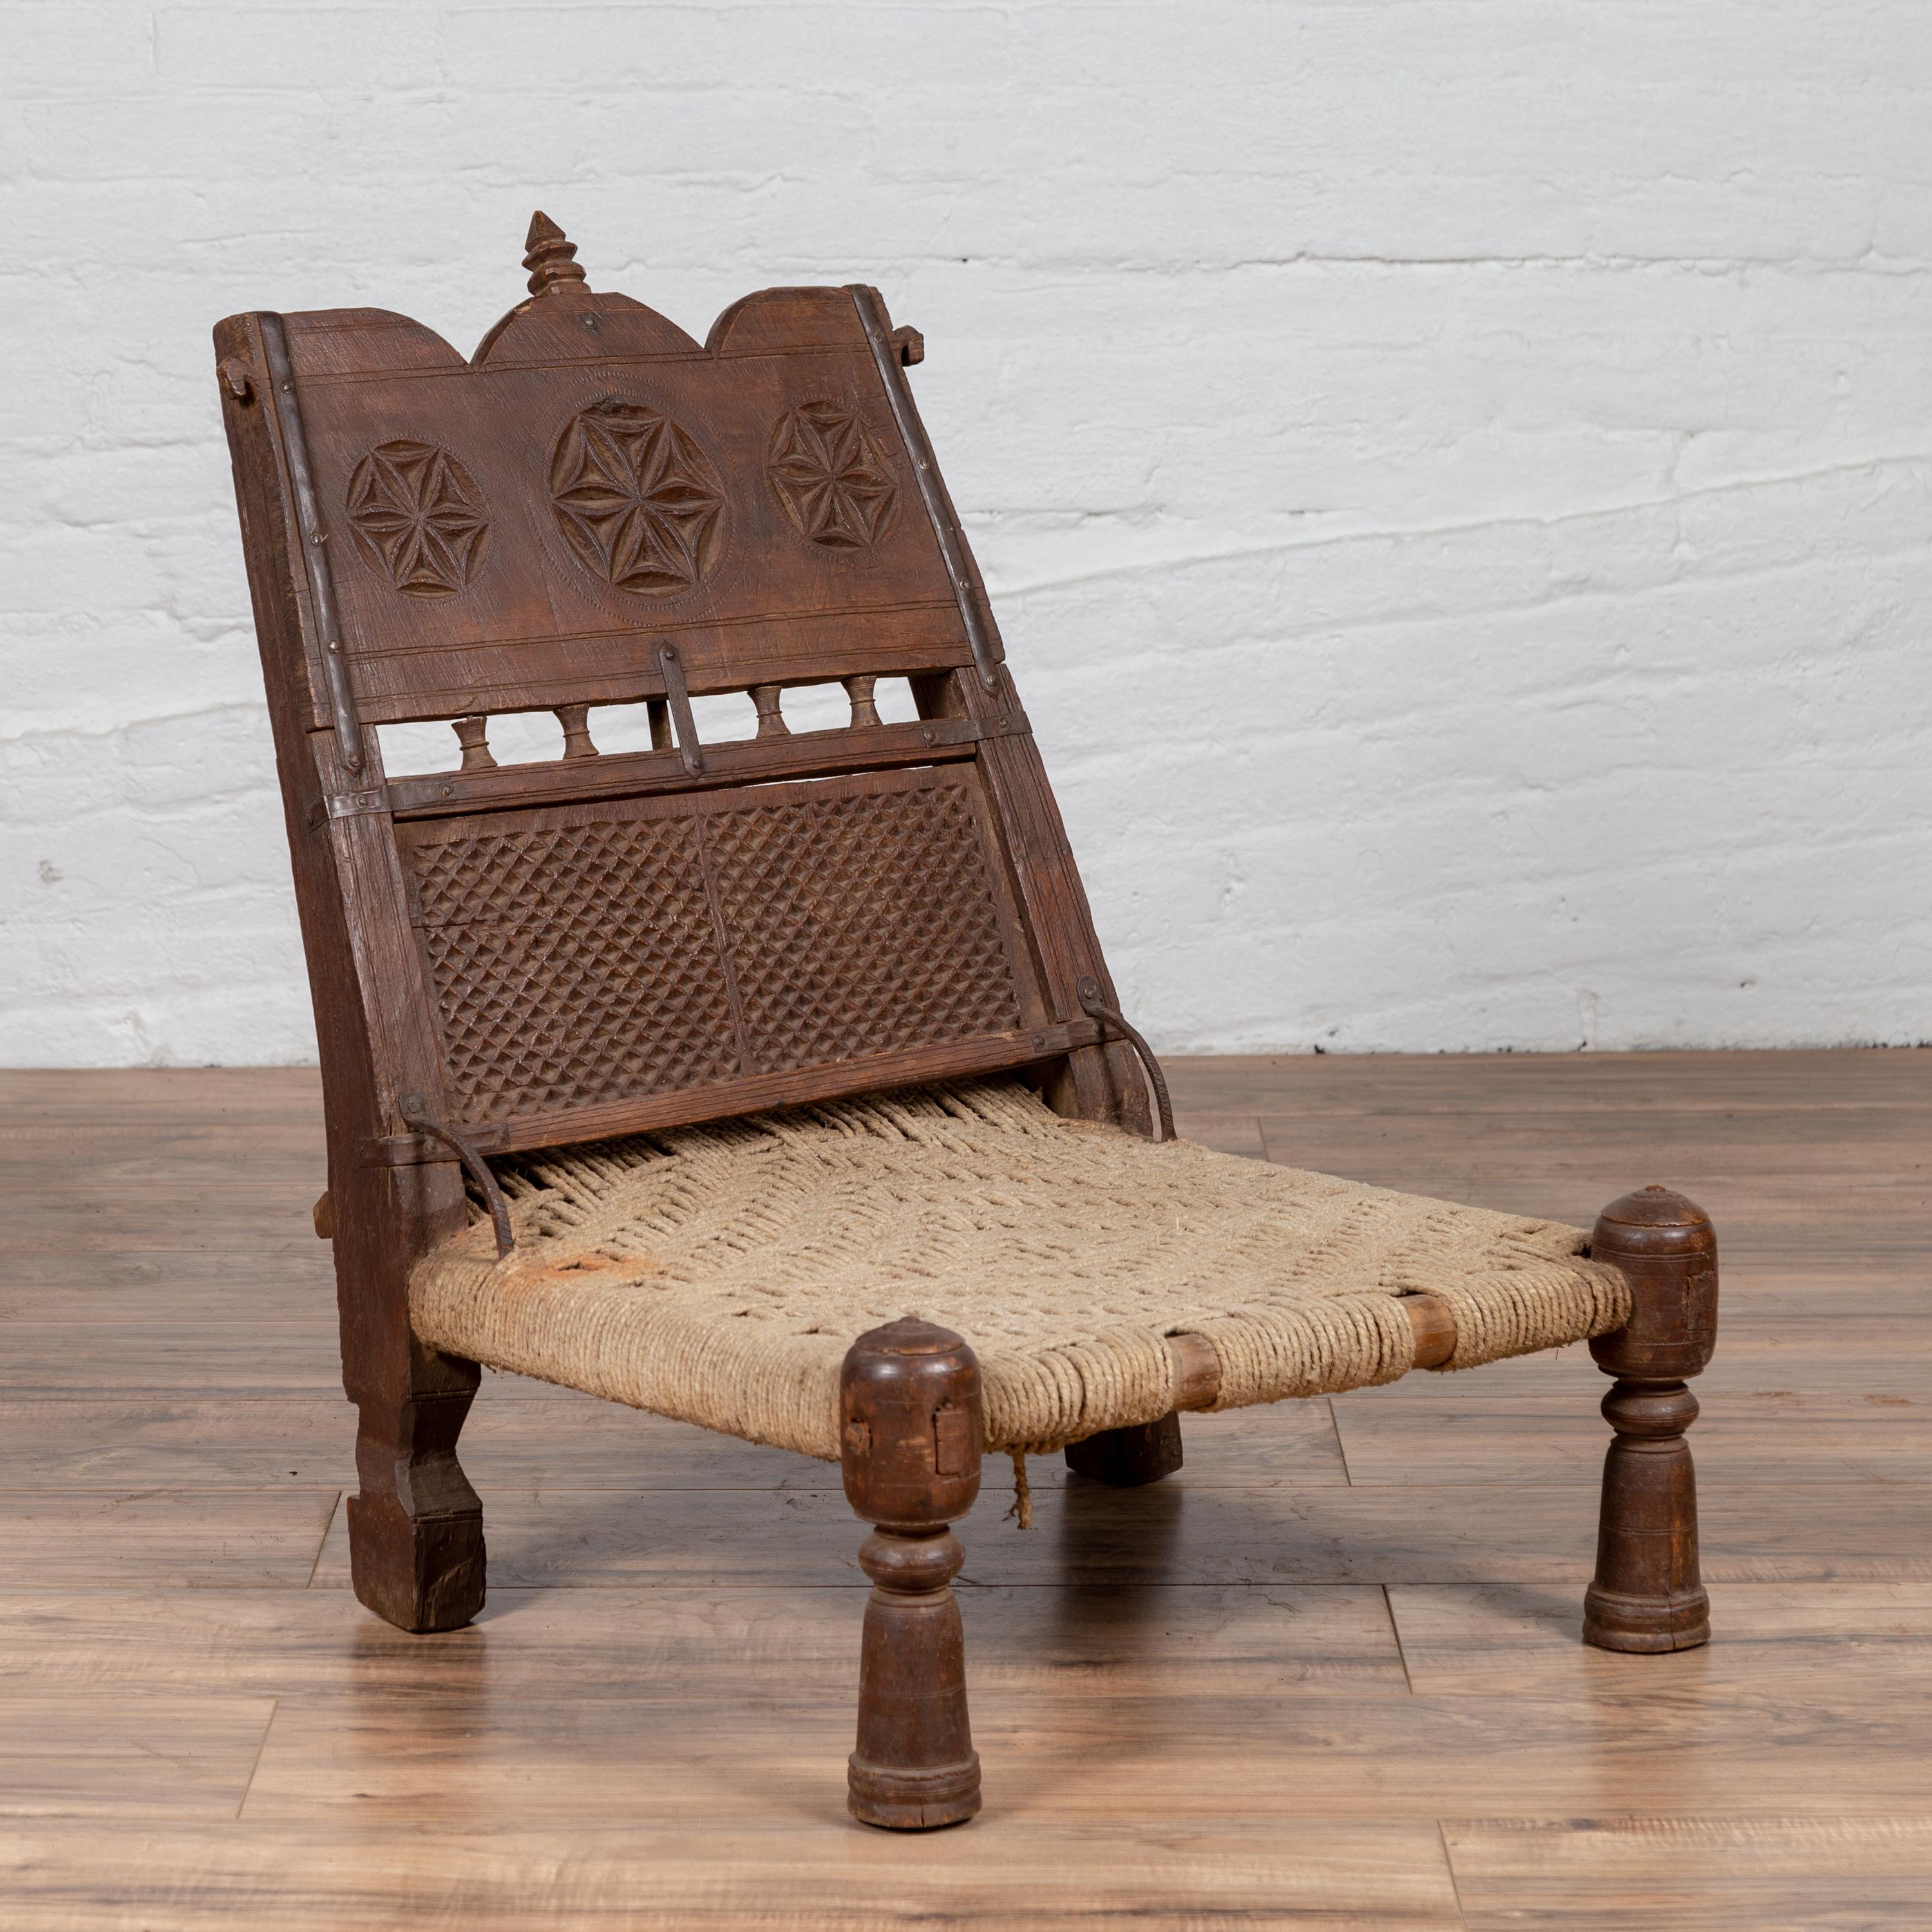 Une vieille chaise basse indienne en bois rustique du début du 20e siècle, avec de la ficelle tissée à la main et des motifs sculptés. Charmant notre regard par son aspect rustique, cette chaise basse en bois présente un court dossier incliné